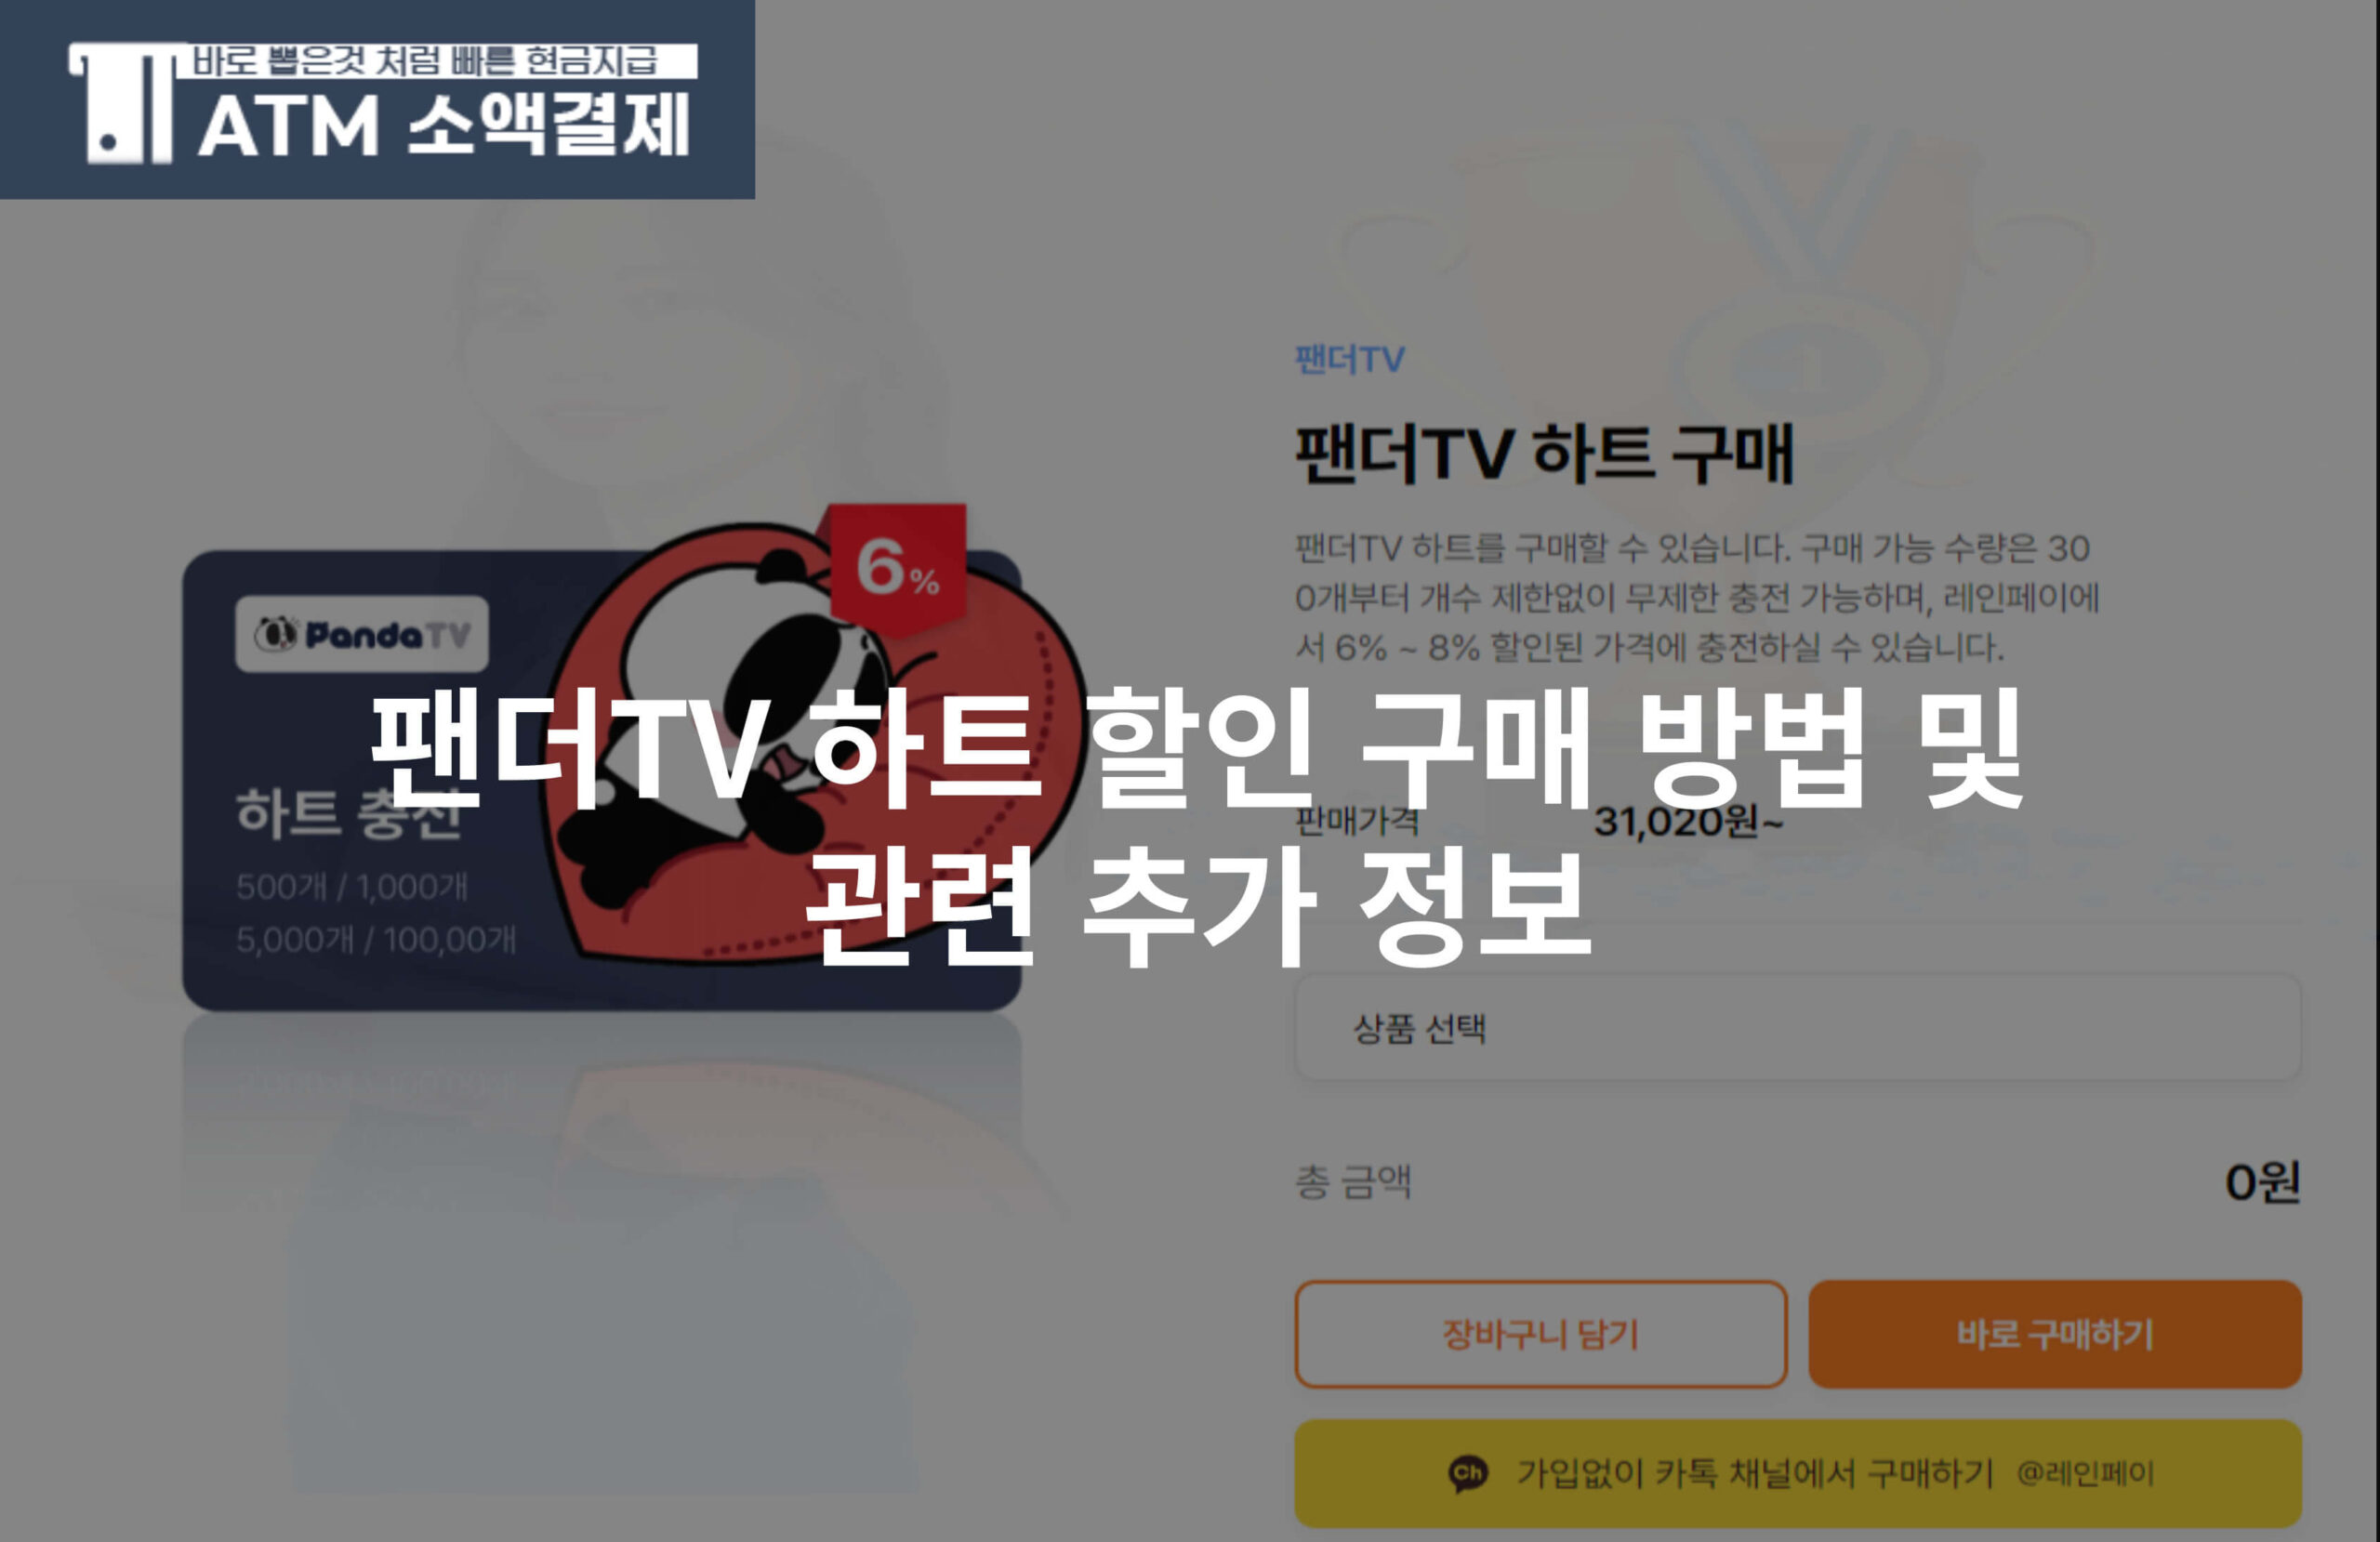 팬더TV 하트 할인 구매 방법 및 관련 추가 정보